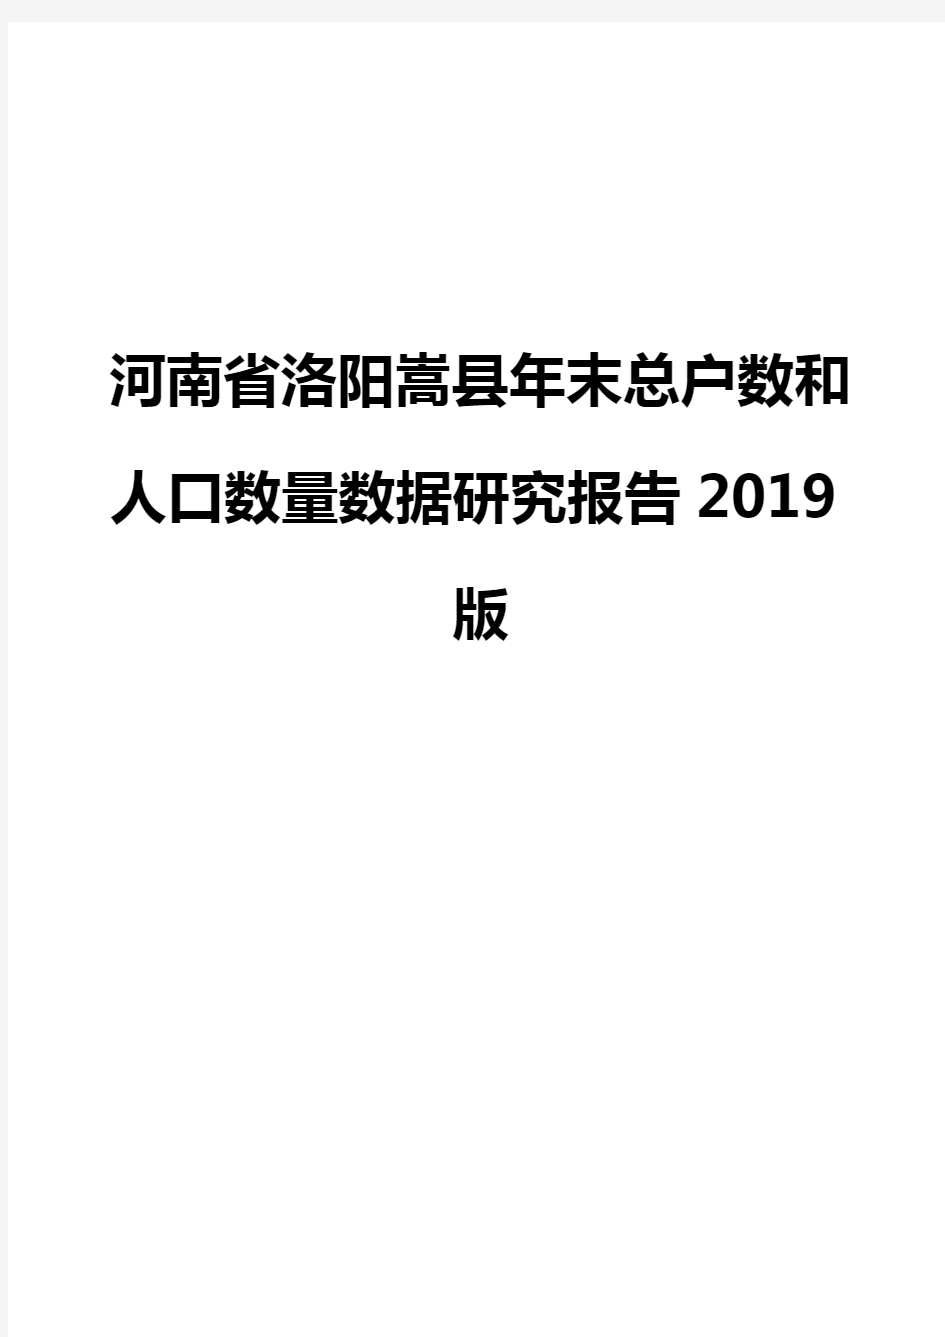 河南省洛阳嵩县年末总户数和人口数量数据研究报告2019版